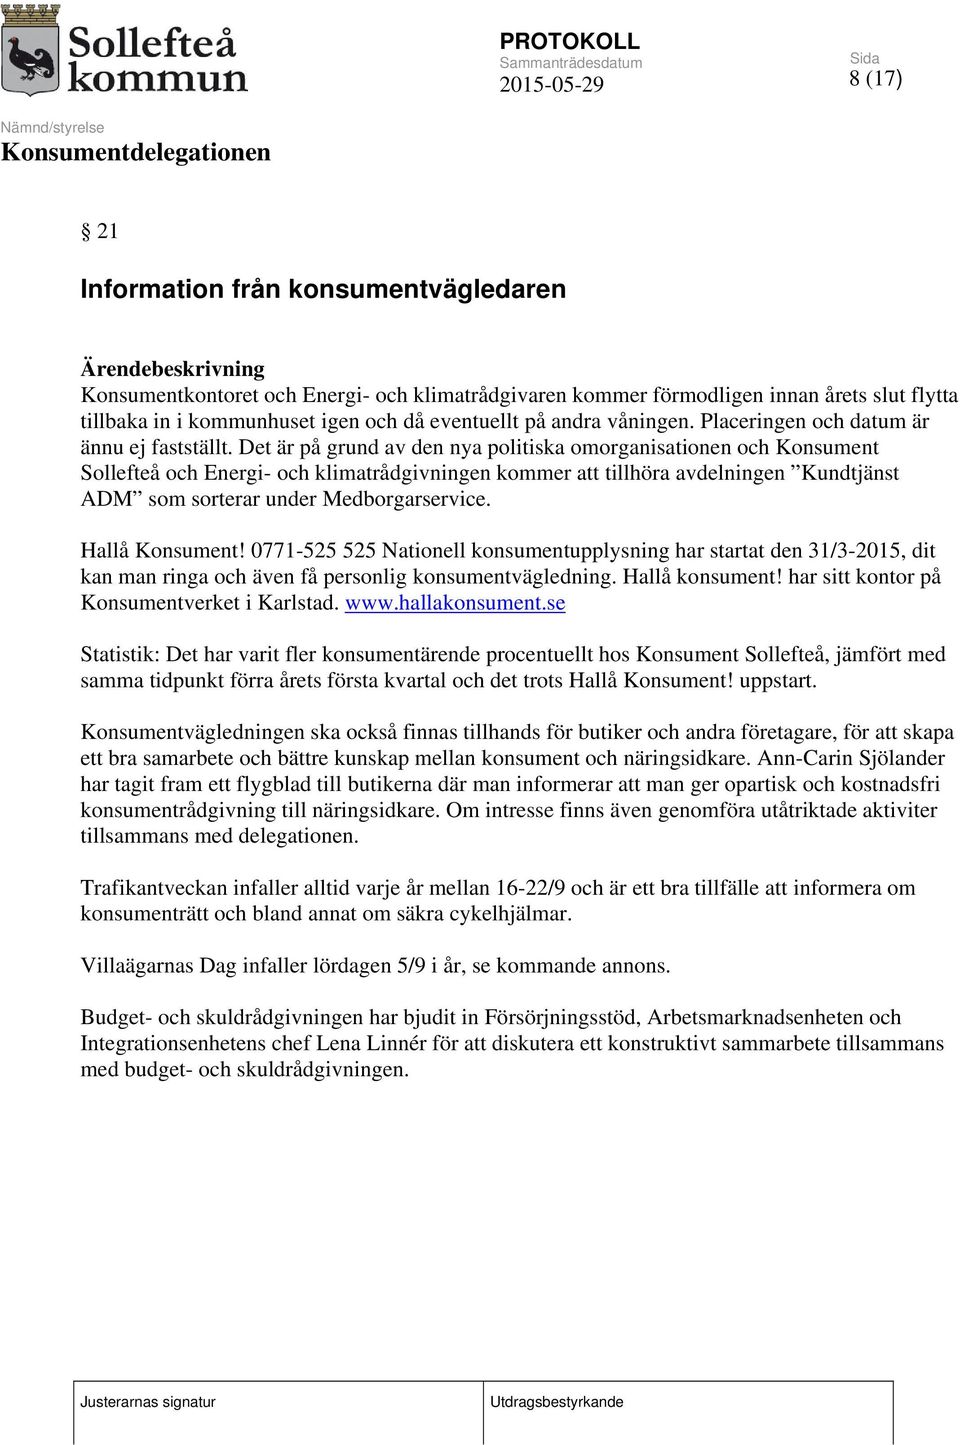 Det är på grund av den nya politiska omorganisationen och Konsument Sollefteå och Energi- och klimatrådgivningen kommer att tillhöra avdelningen Kundtjänst ADM som sorterar under Medborgarservice.